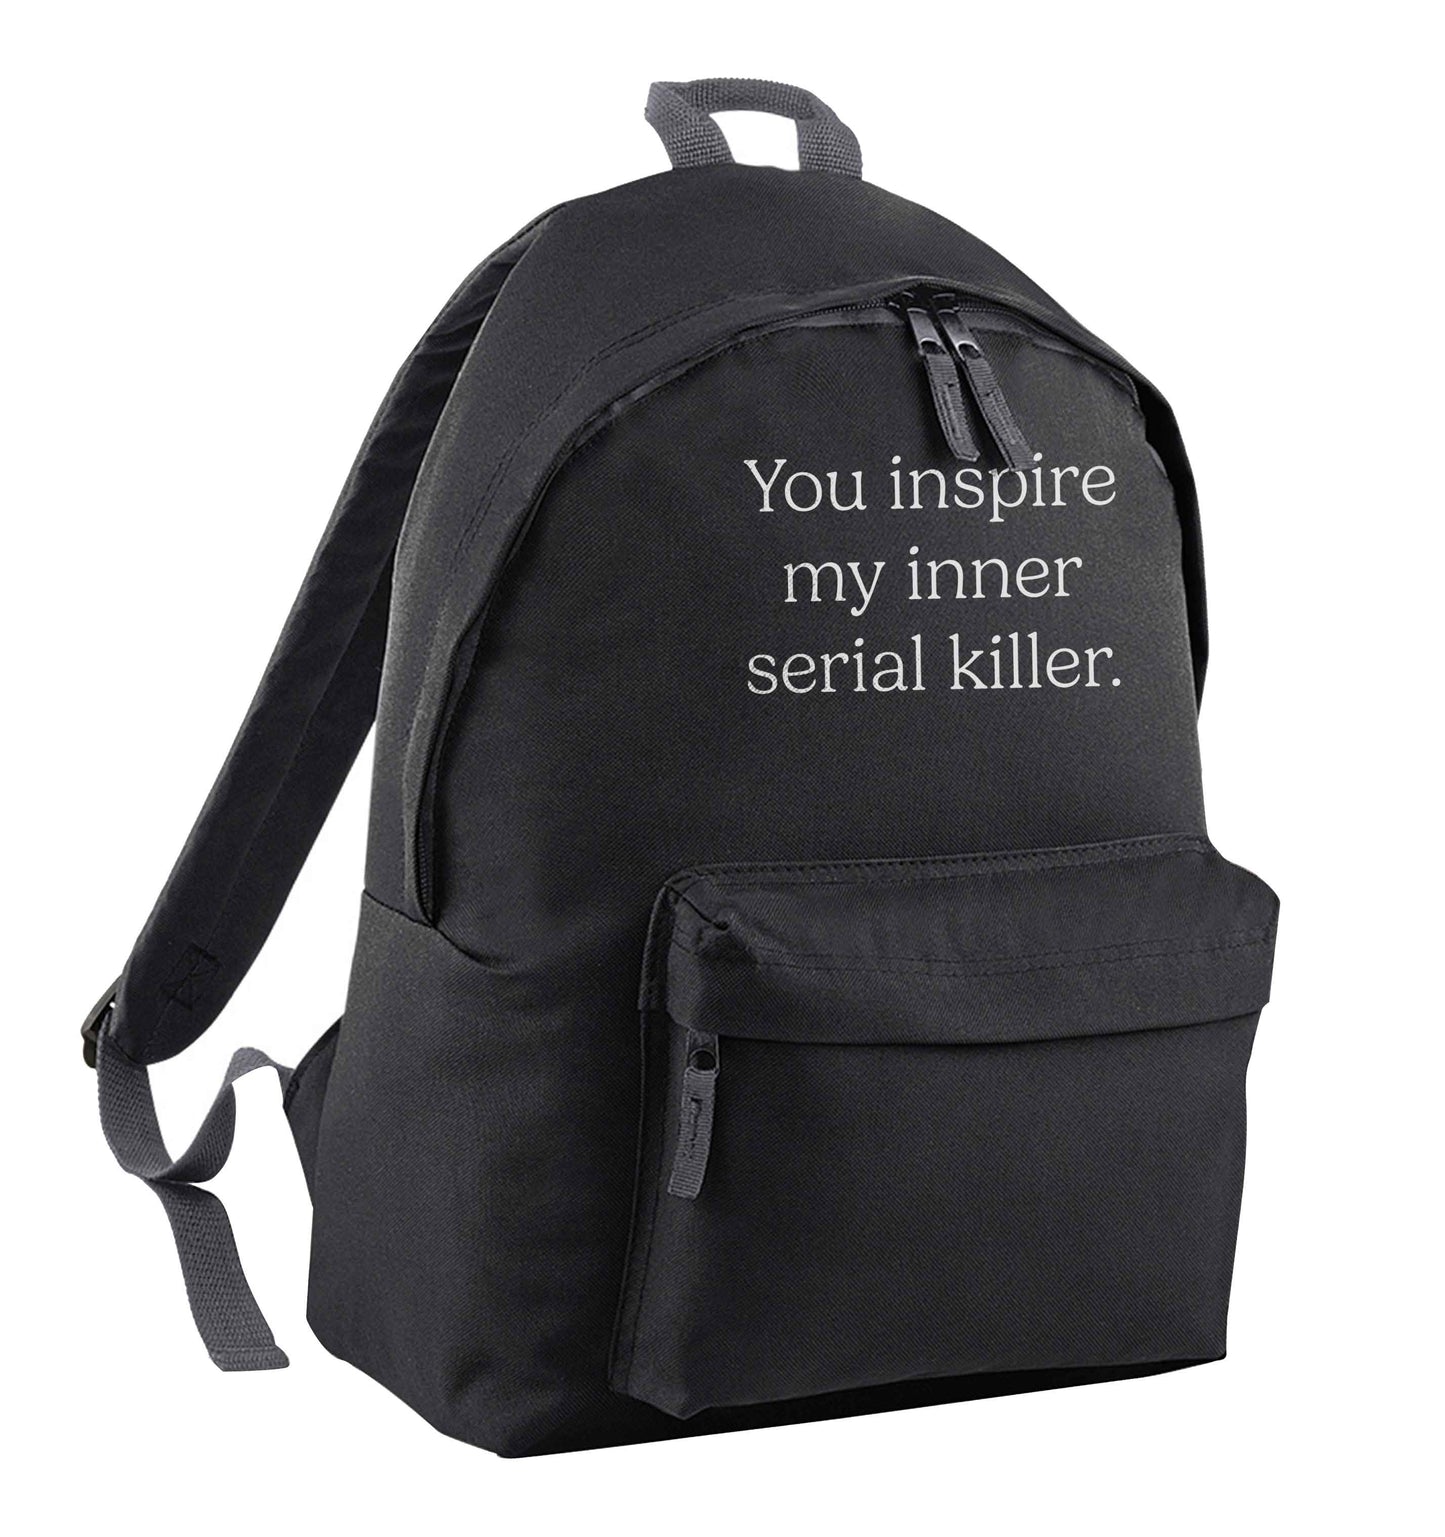 You inspire my inner serial killer Kit black adults backpack